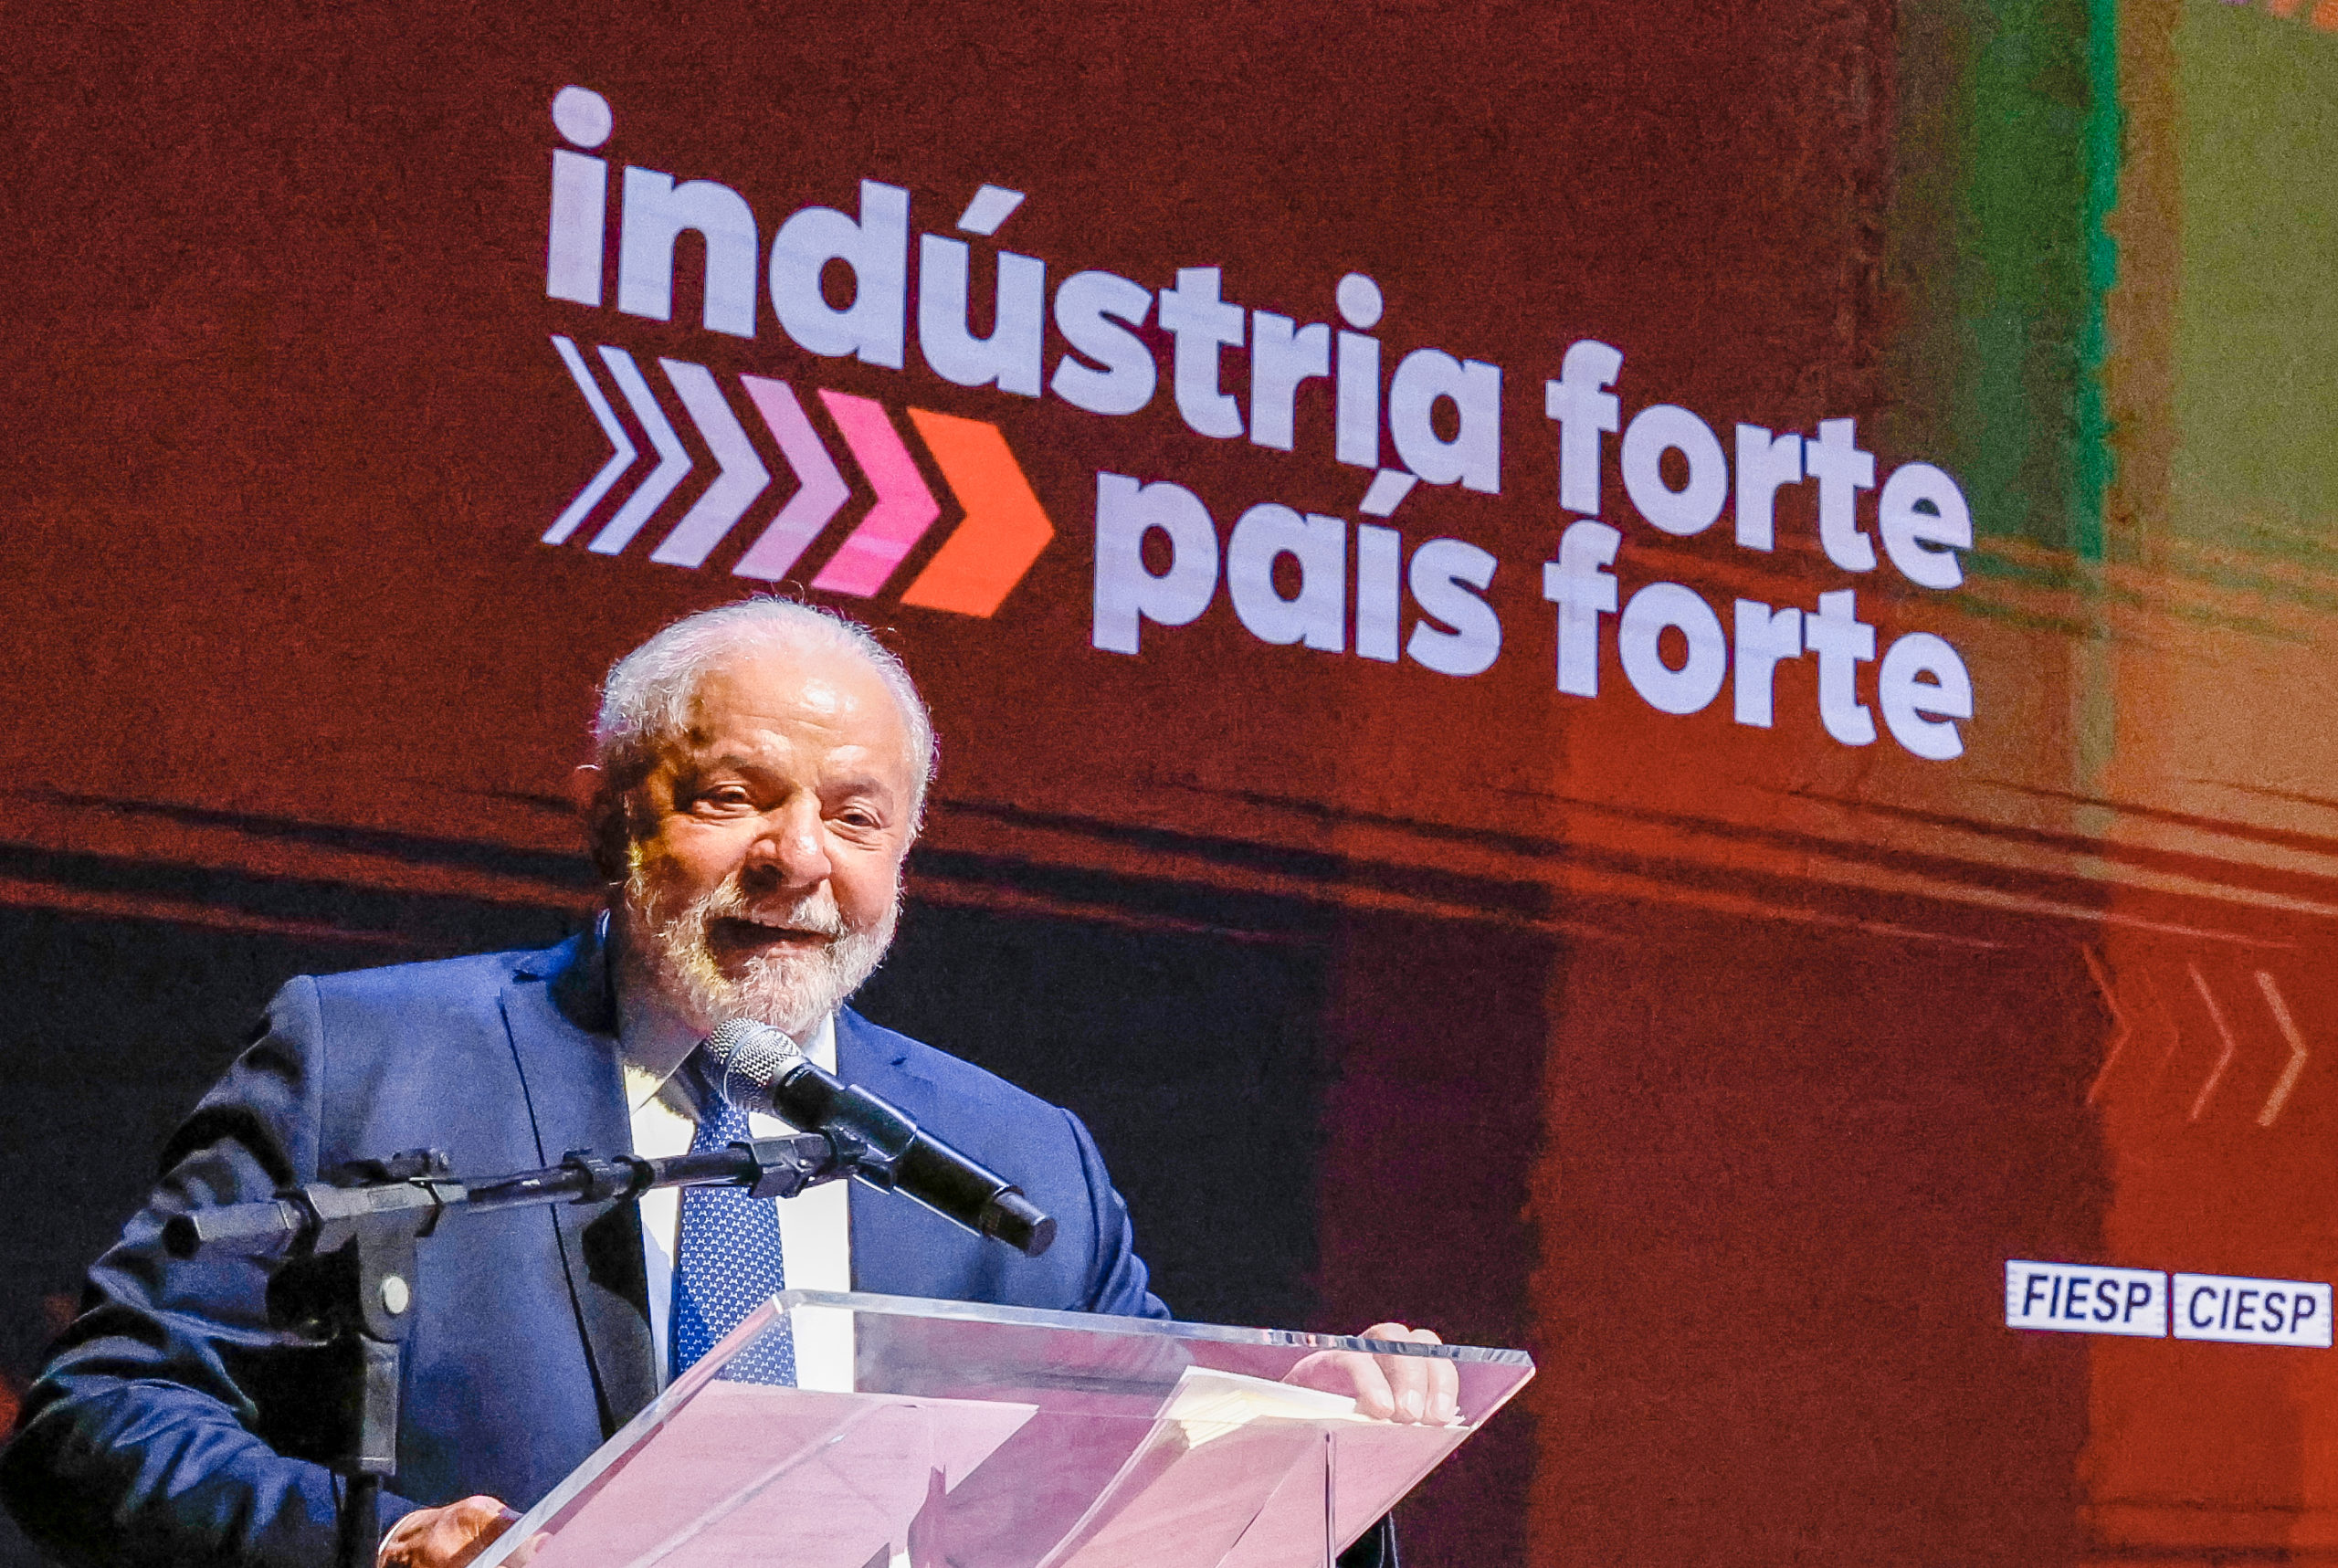 Lula deixa claro que gás para fertilizantes é prioridade: “vamos fazer”. Na imagem: Presidente Lula (PT) durante encerramento do evento em homenagem ao Dia da Indústria na Fiesp, em 25/5/23 (Foto: Ricardo Stuckert/PR)